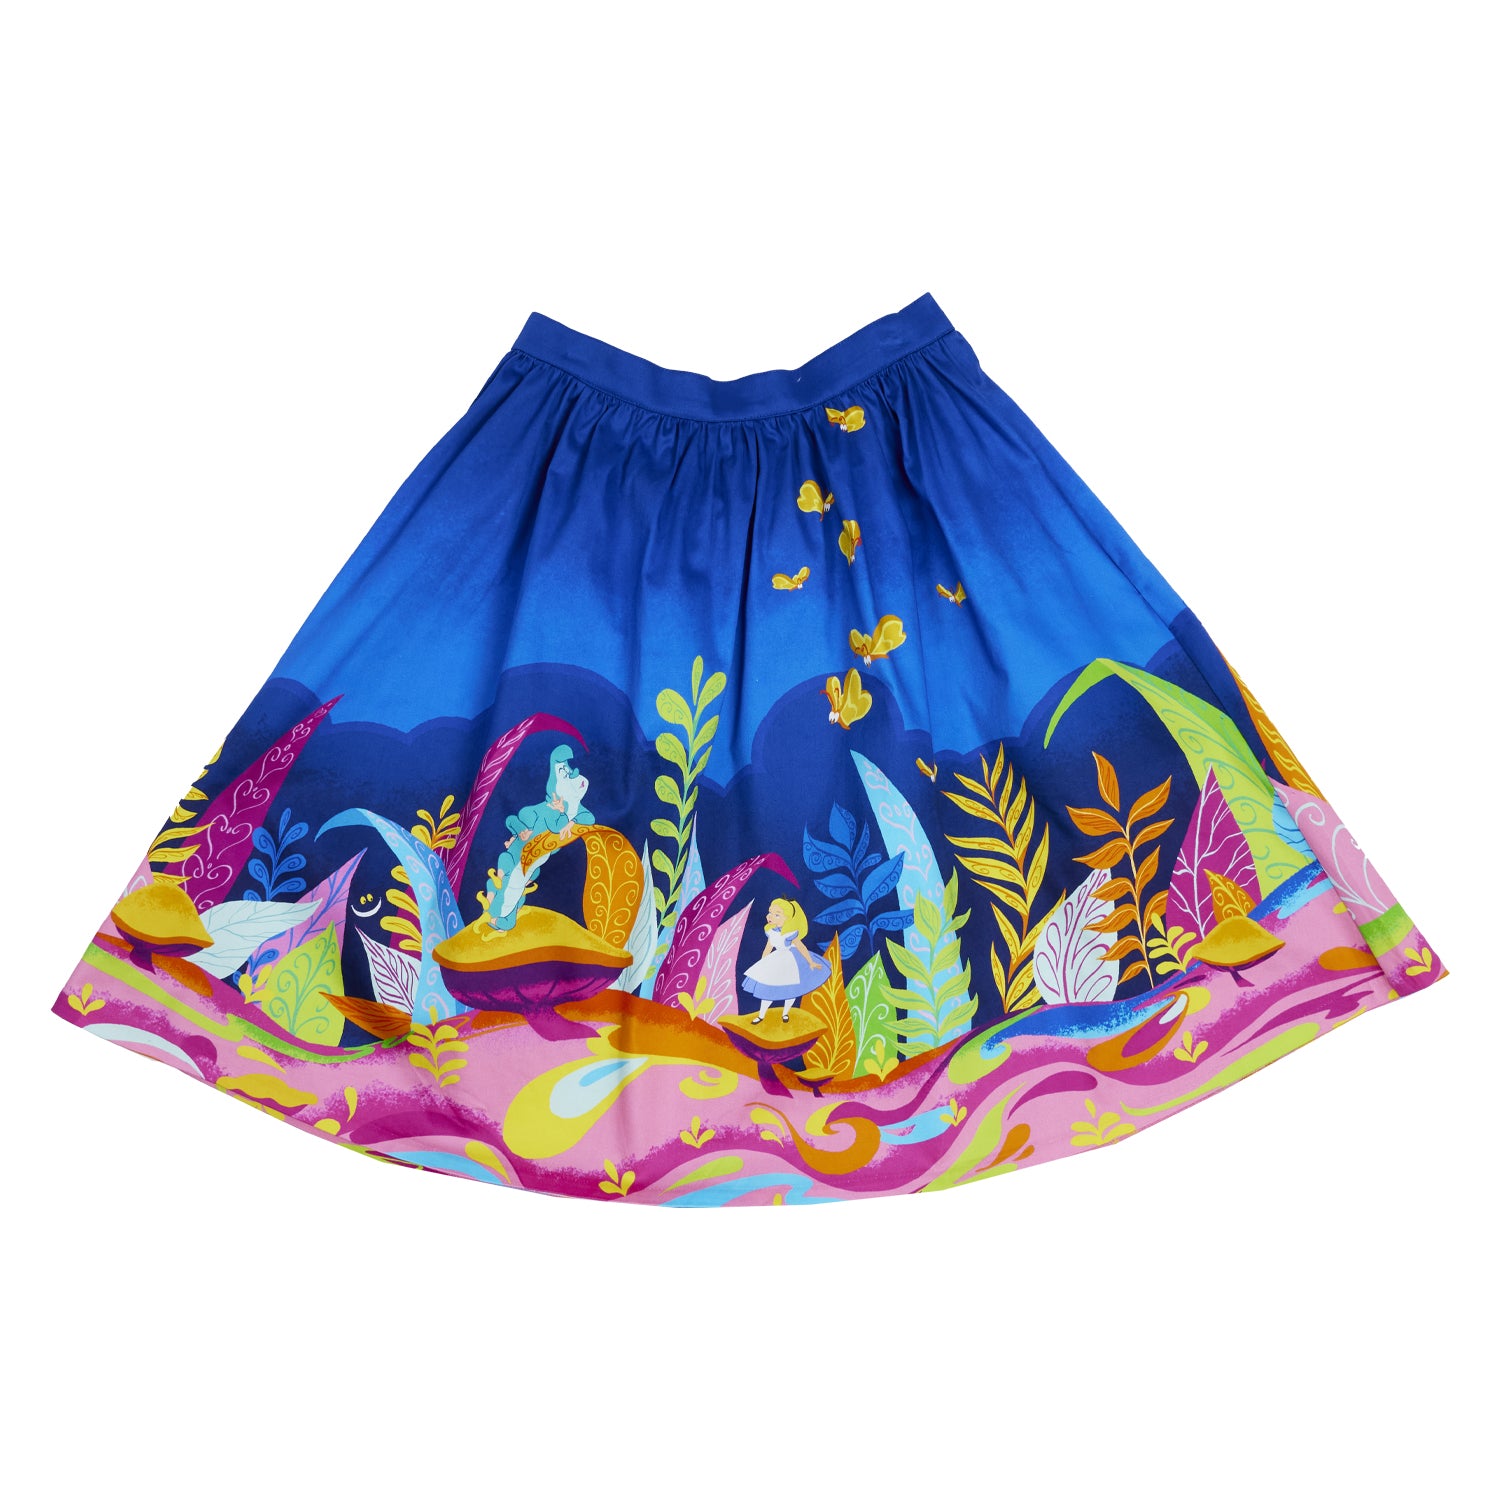 Stitch Shoppe Alice in Wonderland Caterpillar Dream Sandy Skirt